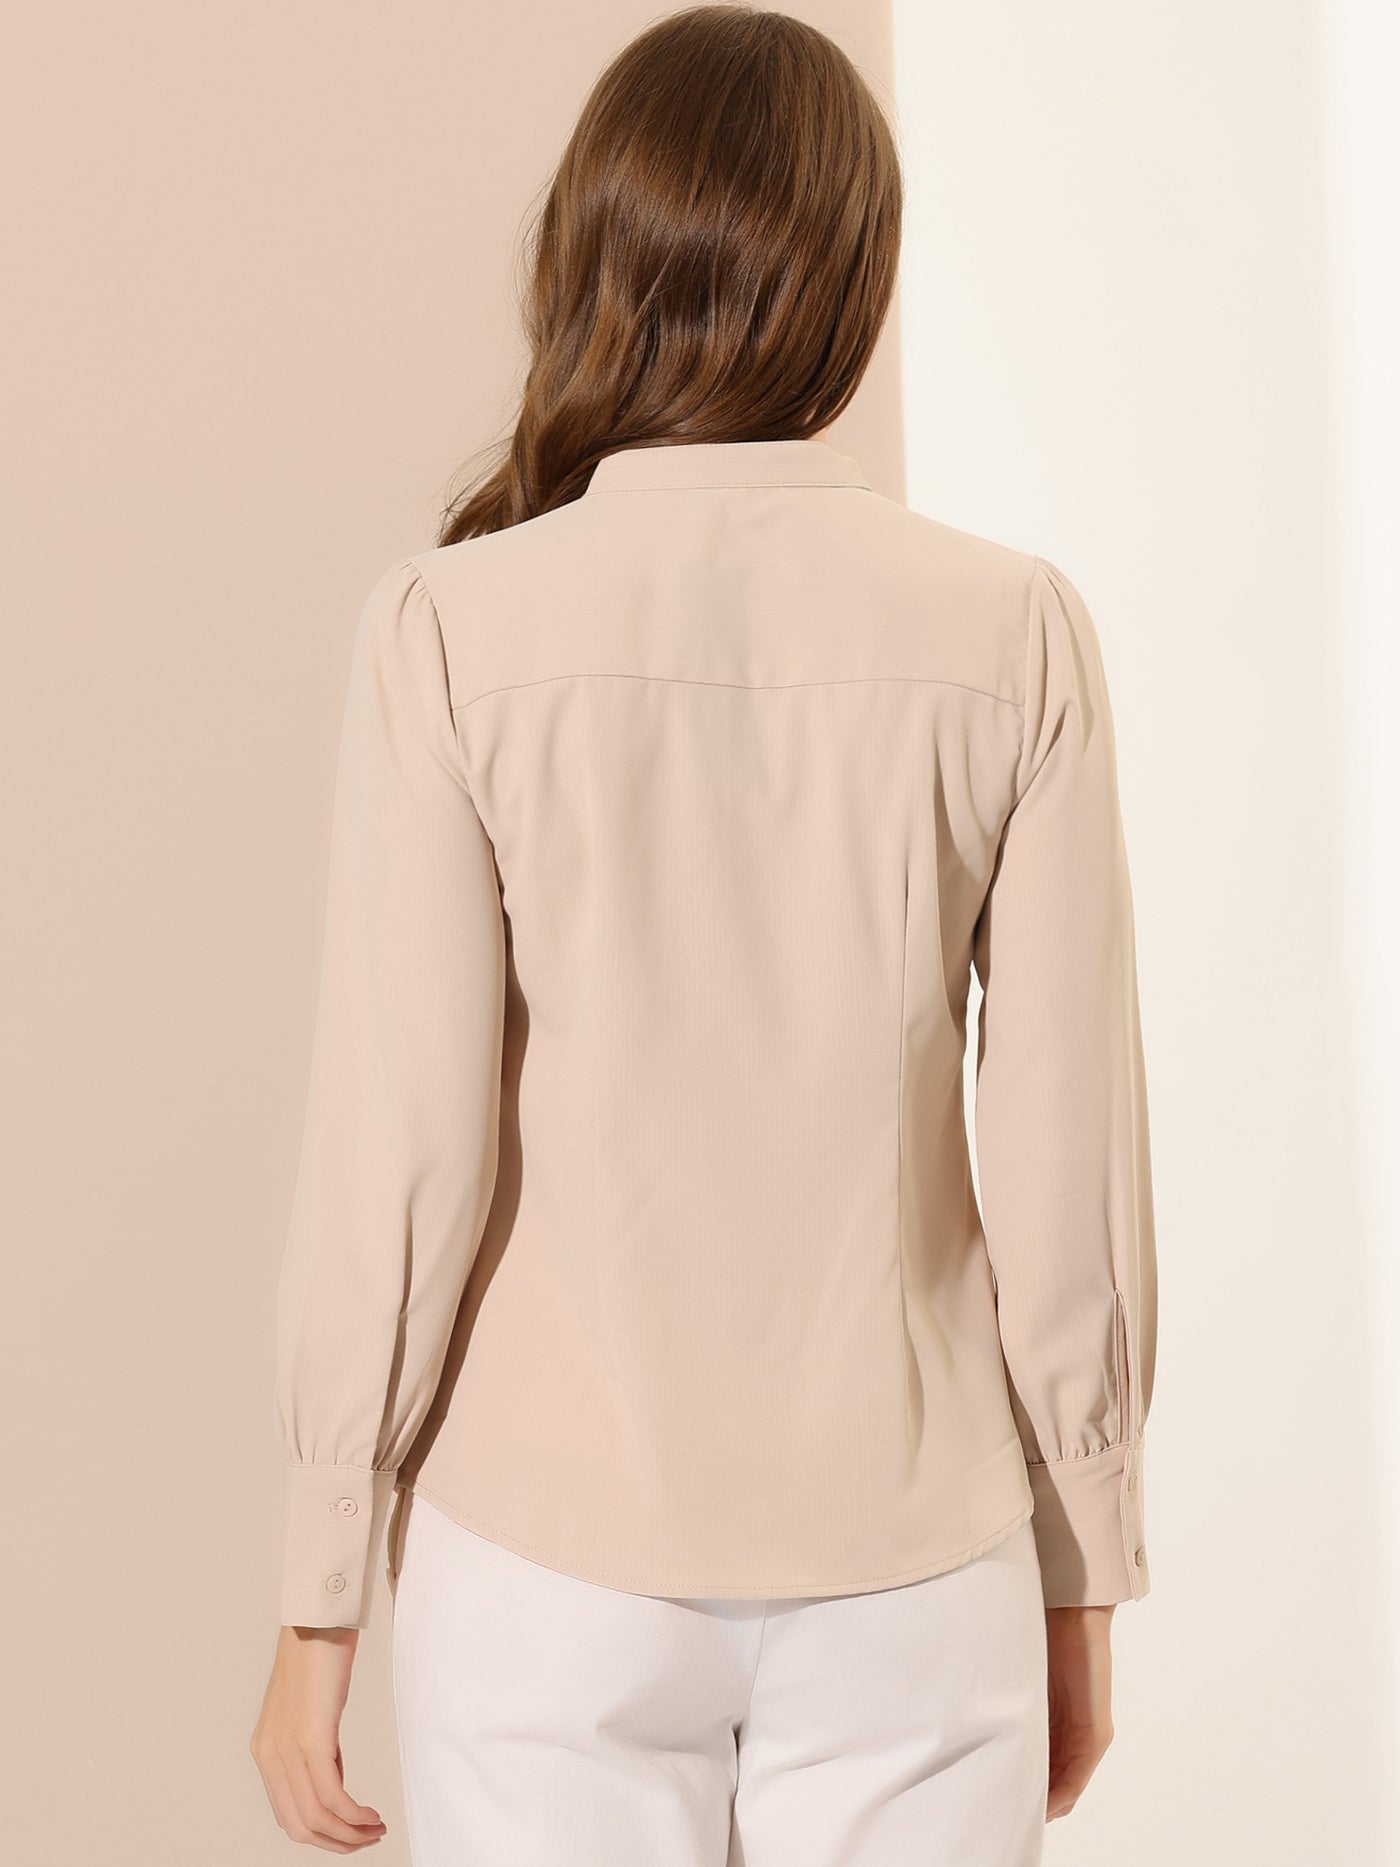 Allegra K Mandarin Collar Office Top Long Sleeve Button Down Shirt